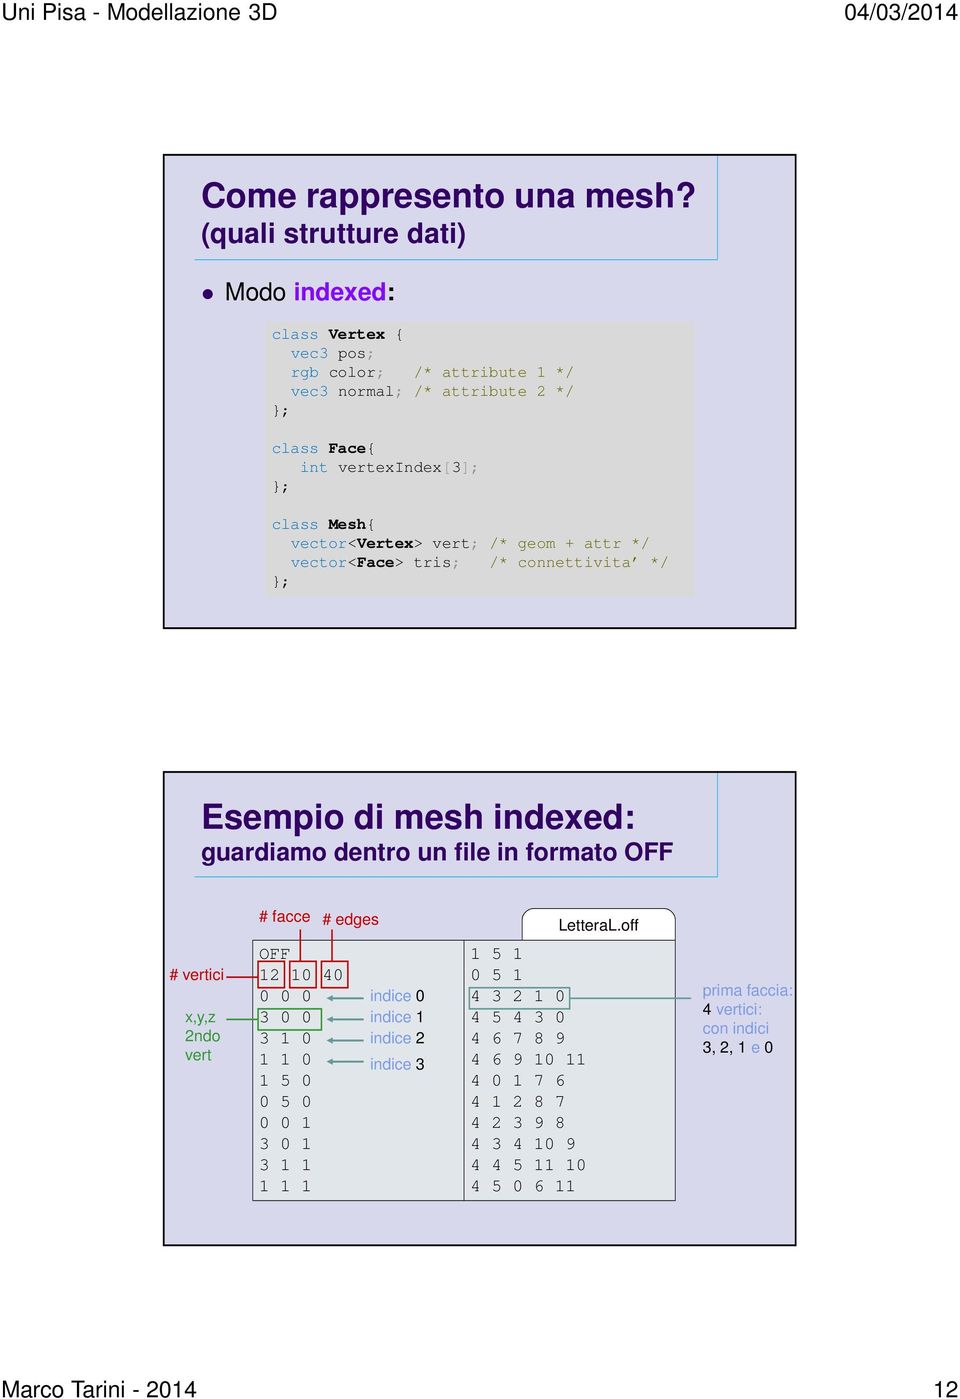 vector<vertex> vert; /* geom + attr */ vector<face> tris; /* connettivita */ }; Esempio di mesh indexed: guardiamo dentro un file in formato OFF # facce # edges LetteraL.